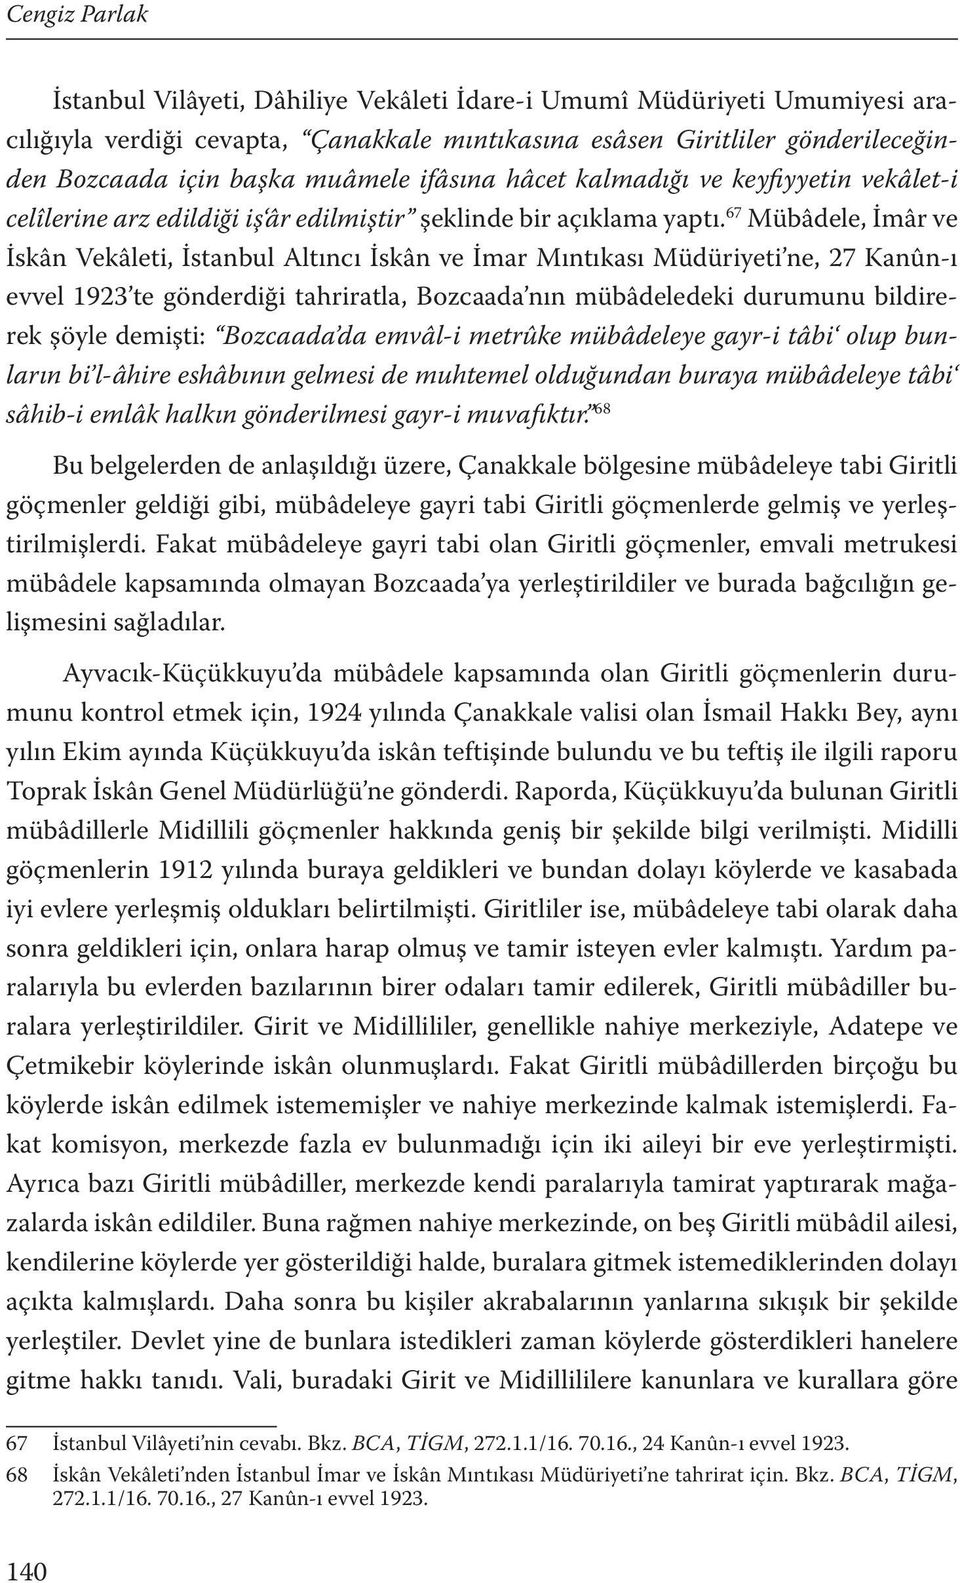 67 Mübâdele, İmâr ve İskân Vekâleti, İstanbul Altıncı İskân ve İmar Mıntıkası Müdüriyeti ne, 27 Kanûn-ı evvel 1923 te gönderdiği tahriratla, Bozcaada nın mübâdeledeki durumunu bildirerek şöyle